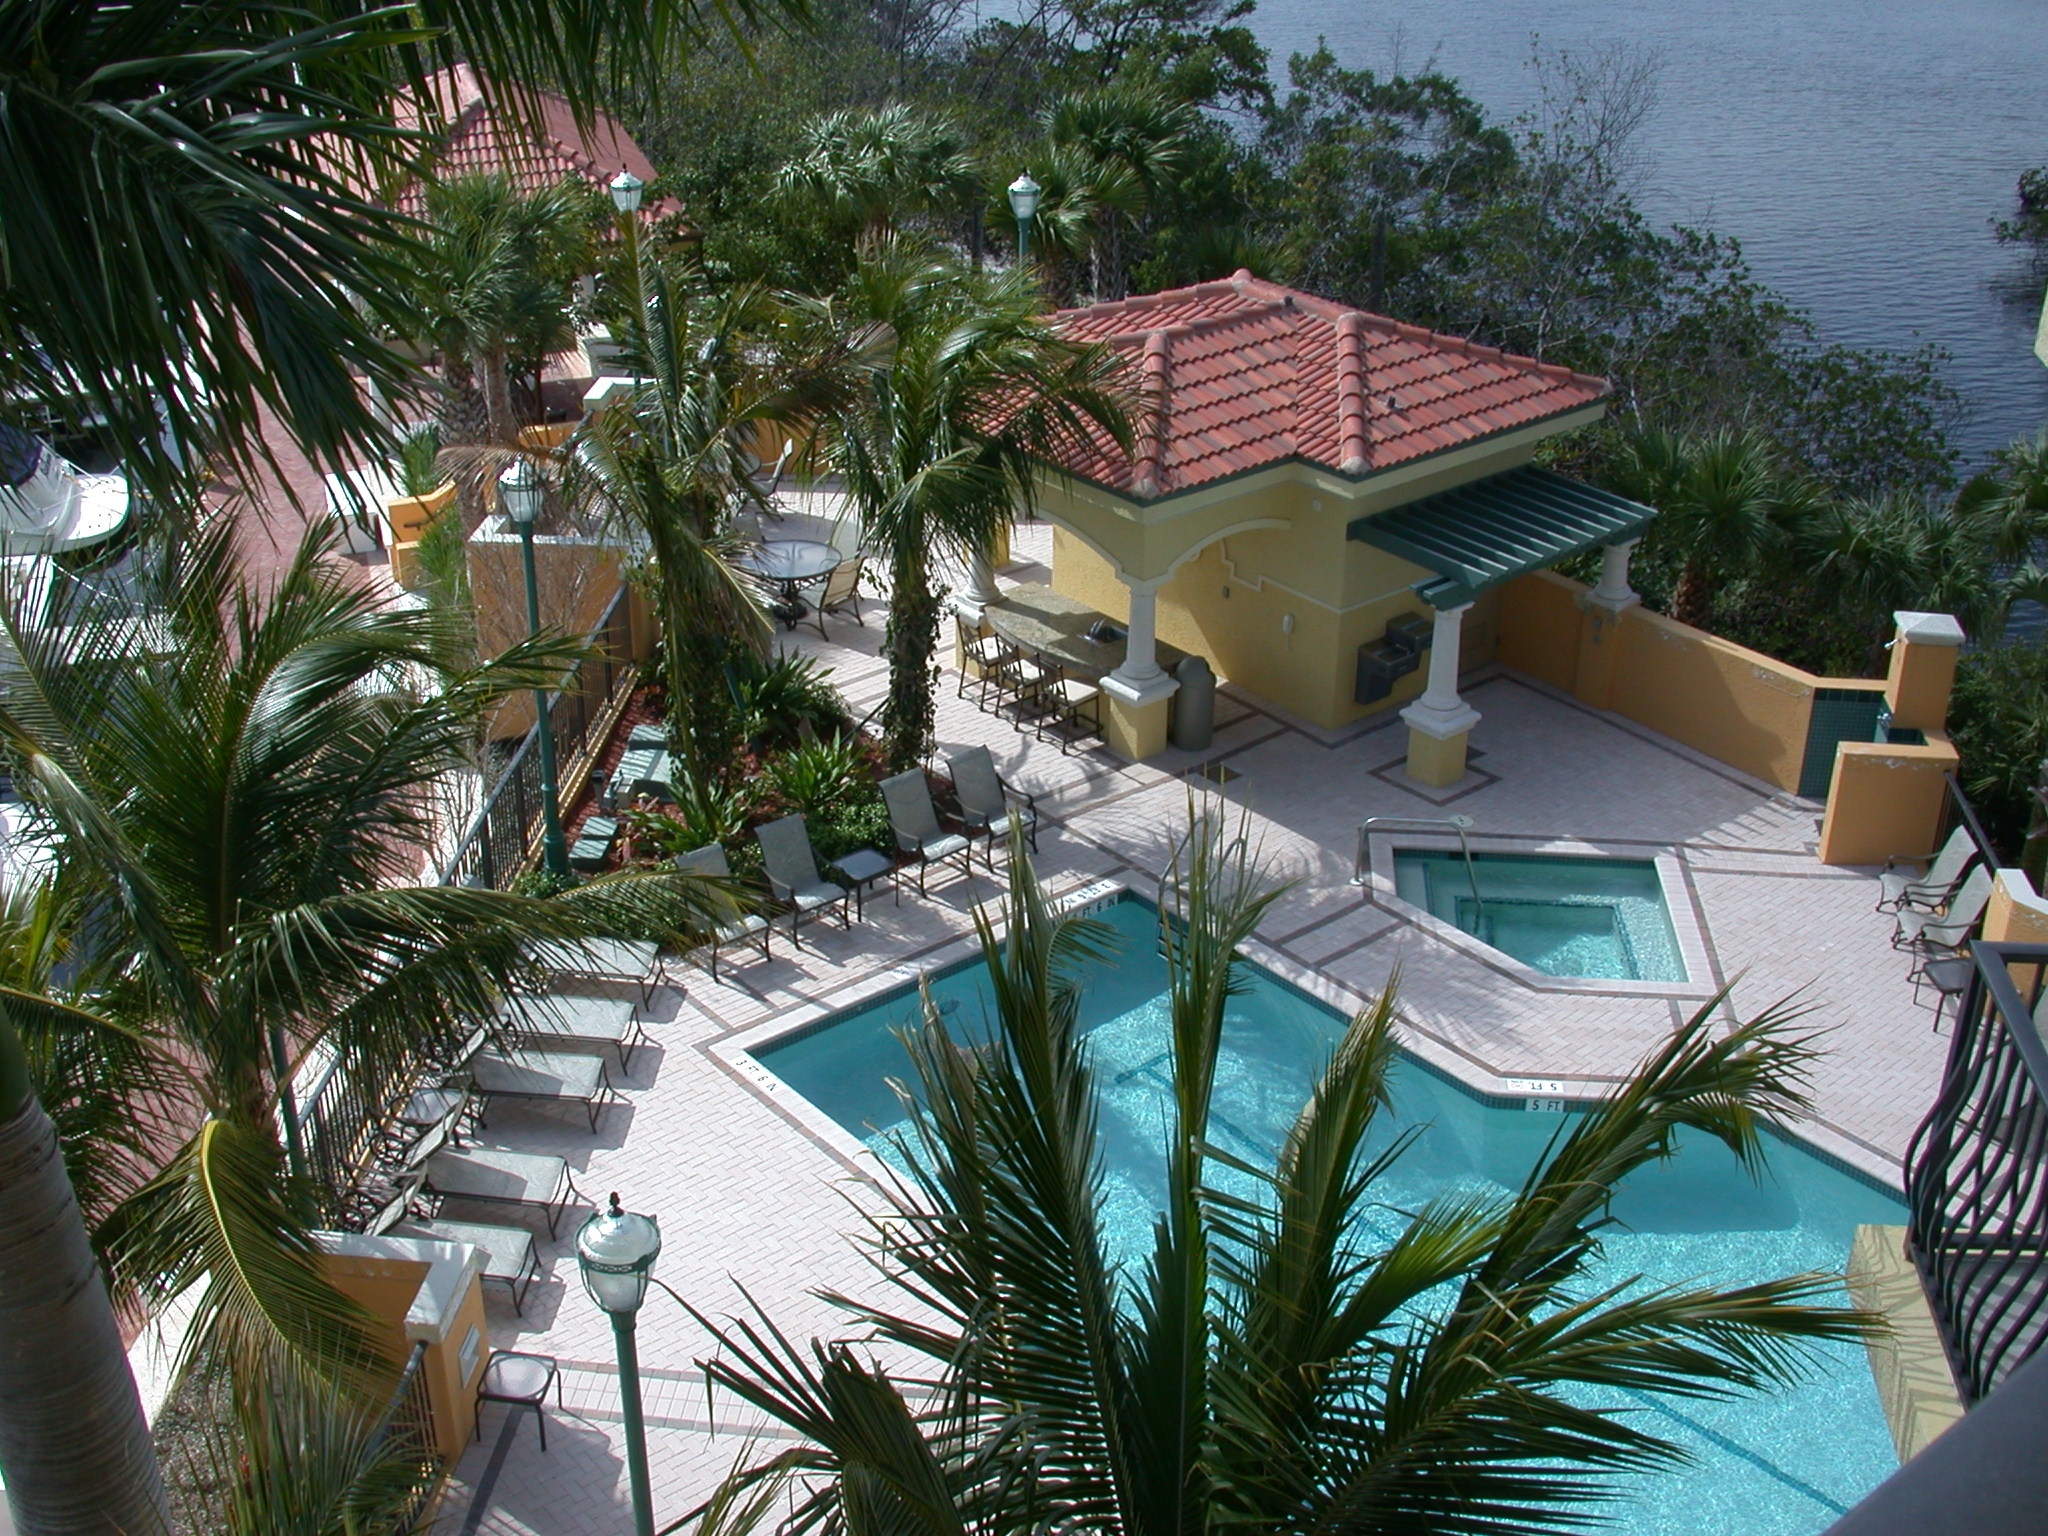 Jupiter Yacht Club Florida Pool Cabana.JPG